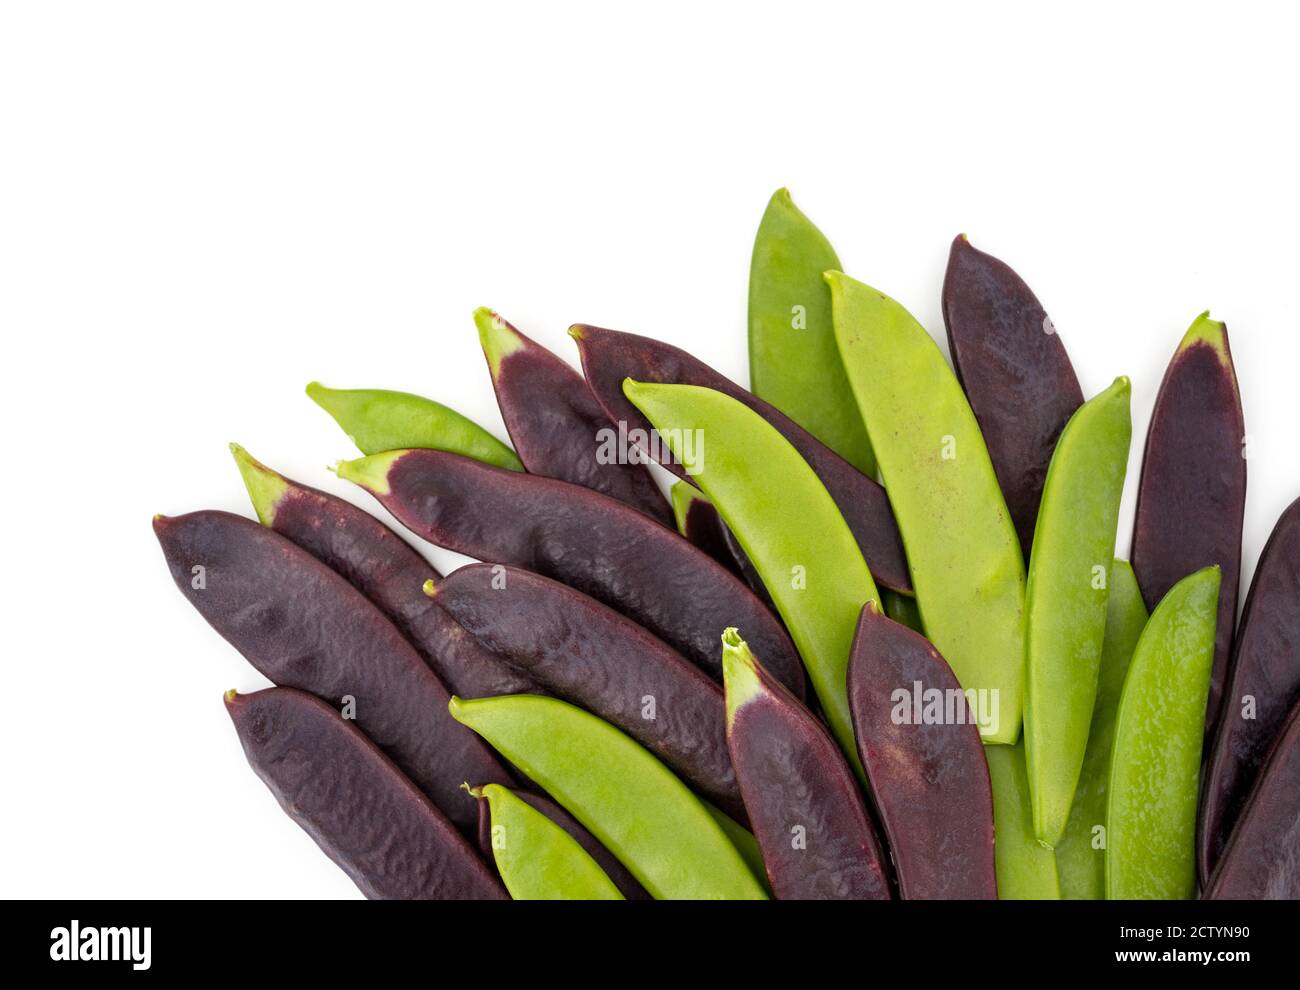 Assortiment de pois à sucre vert et de pois à neige violets. Vue de dessus des gousses de pois alignées en bas. Légumes riches en protéines. Légumes frais. Banque D'Images